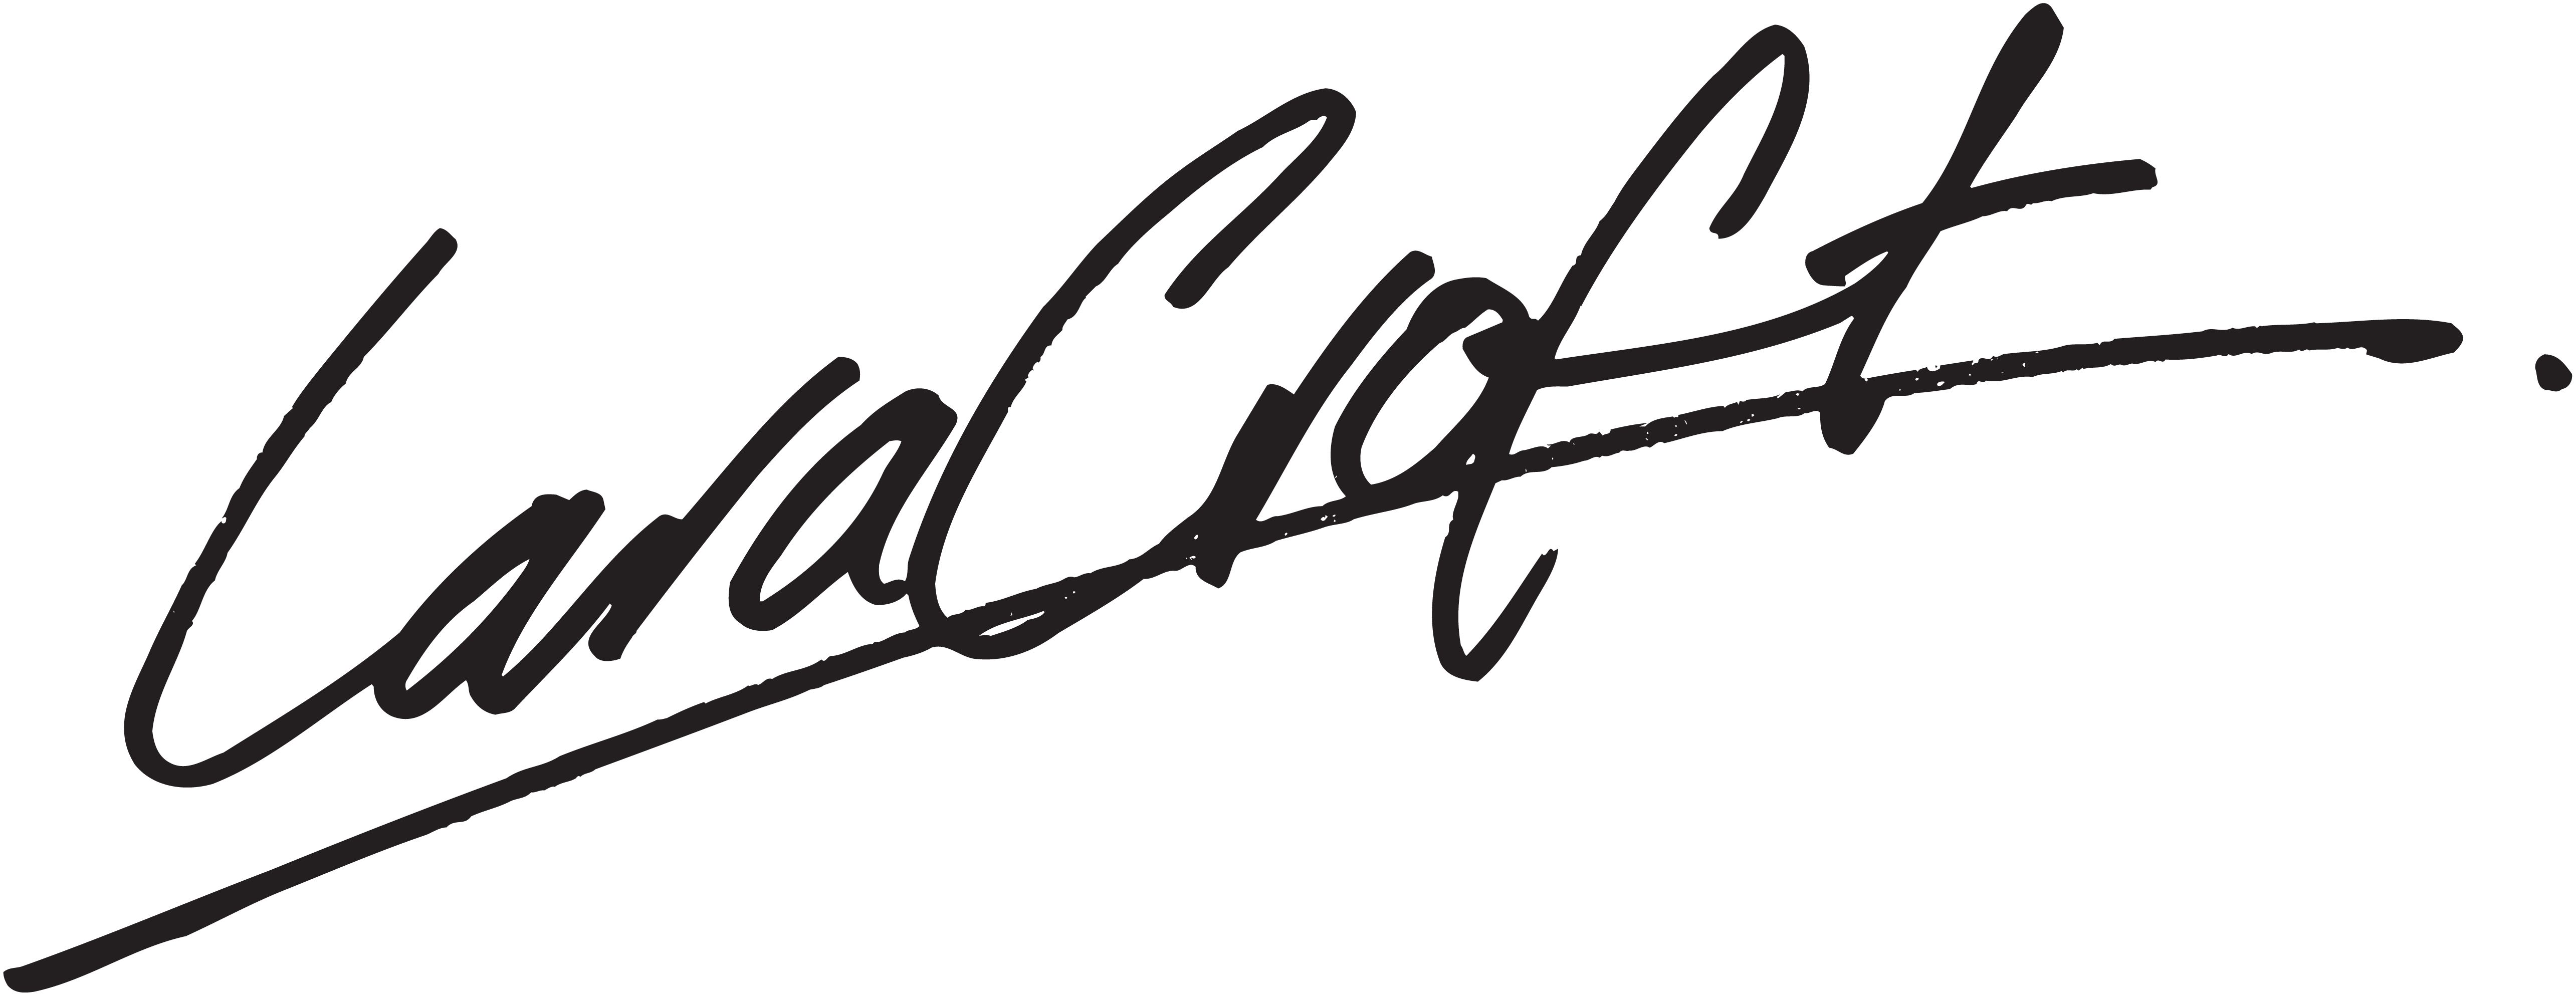 Lara Croft Signature Example